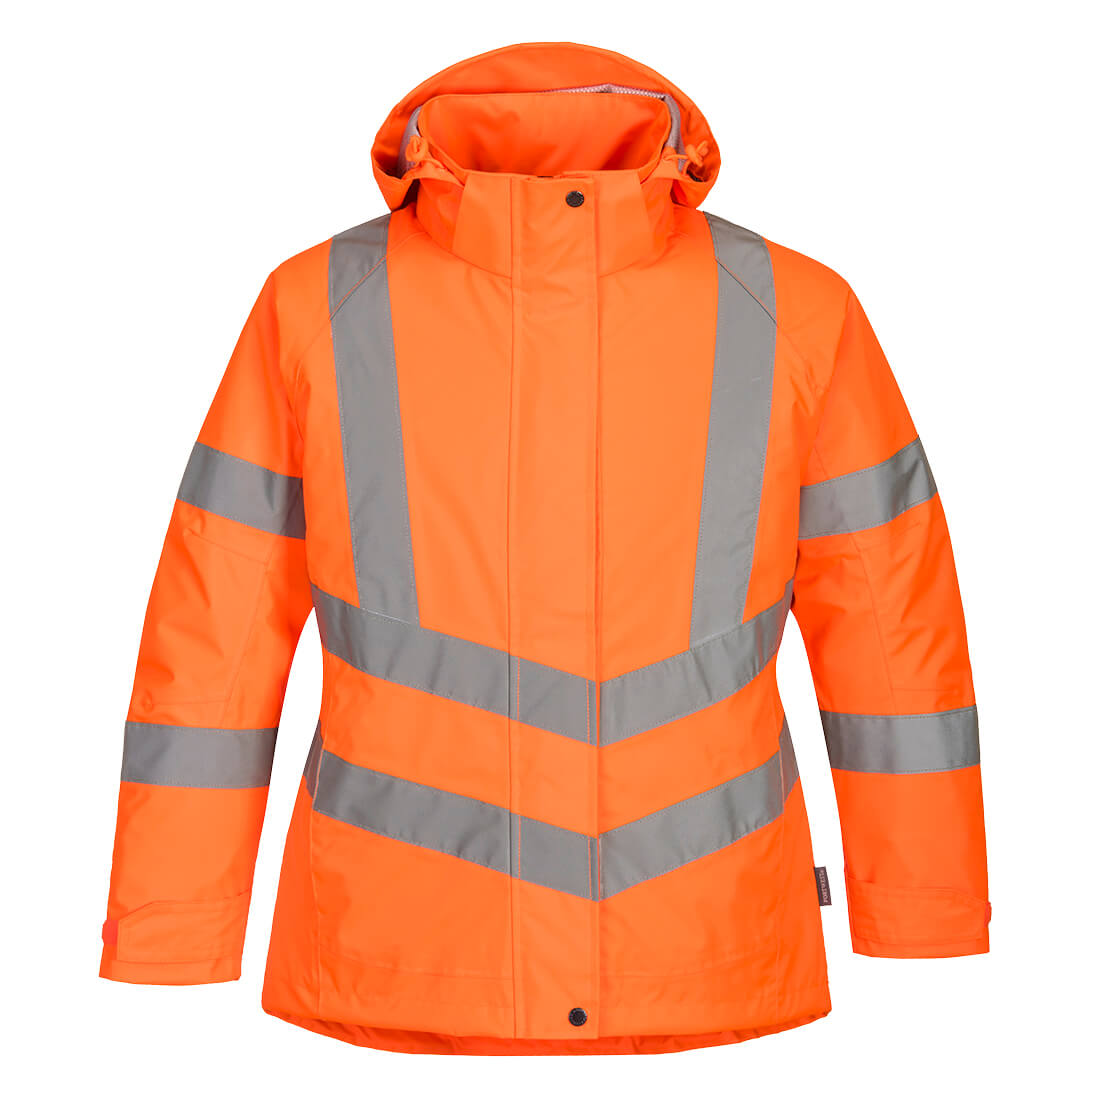 Women's Hi-Vis Winter Jacket - Orange